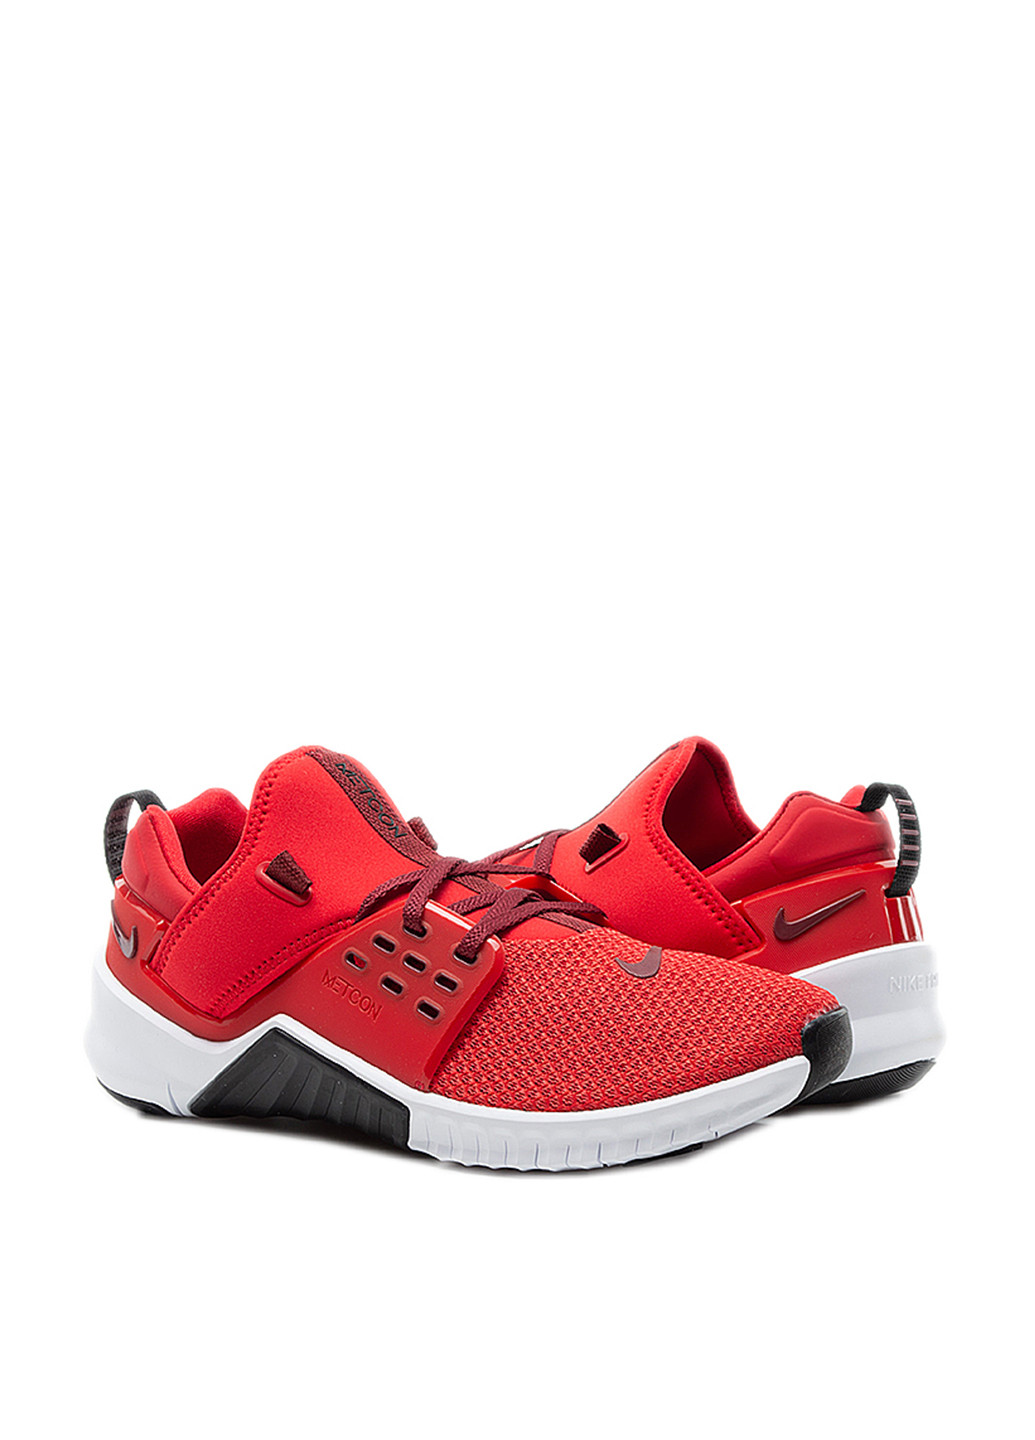 Червоні всесезон кросівки Nike Nike Free X Metcon 2